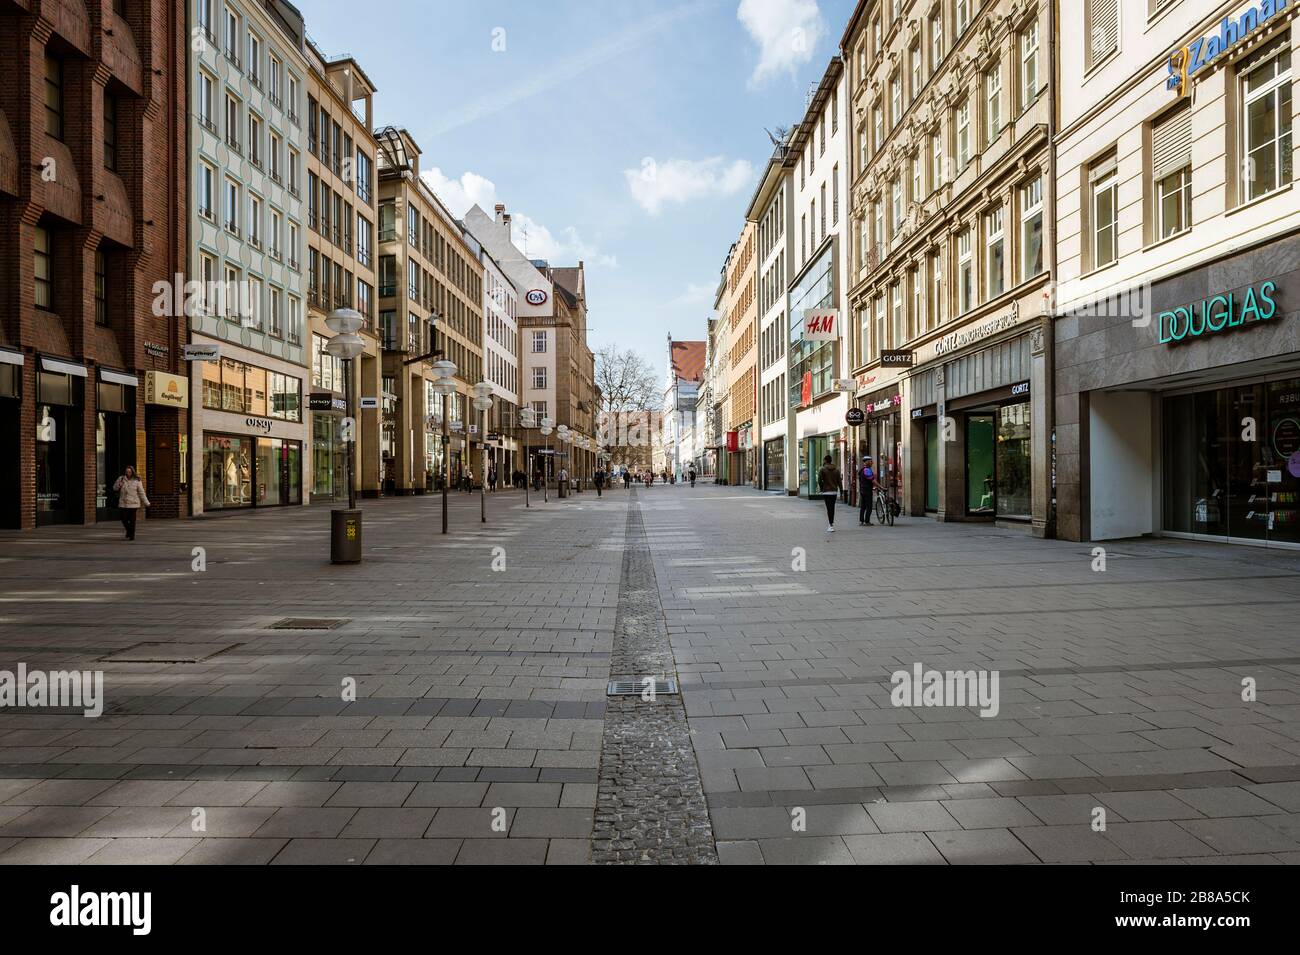 Bayern-München-Deutschland, 20. März 2020: Nur wenige Menschen gehen auf dem Marienplatz in München, der in der Regel überfüllt ist, aber wegen der neuen Karre leer bleibt Stockfoto